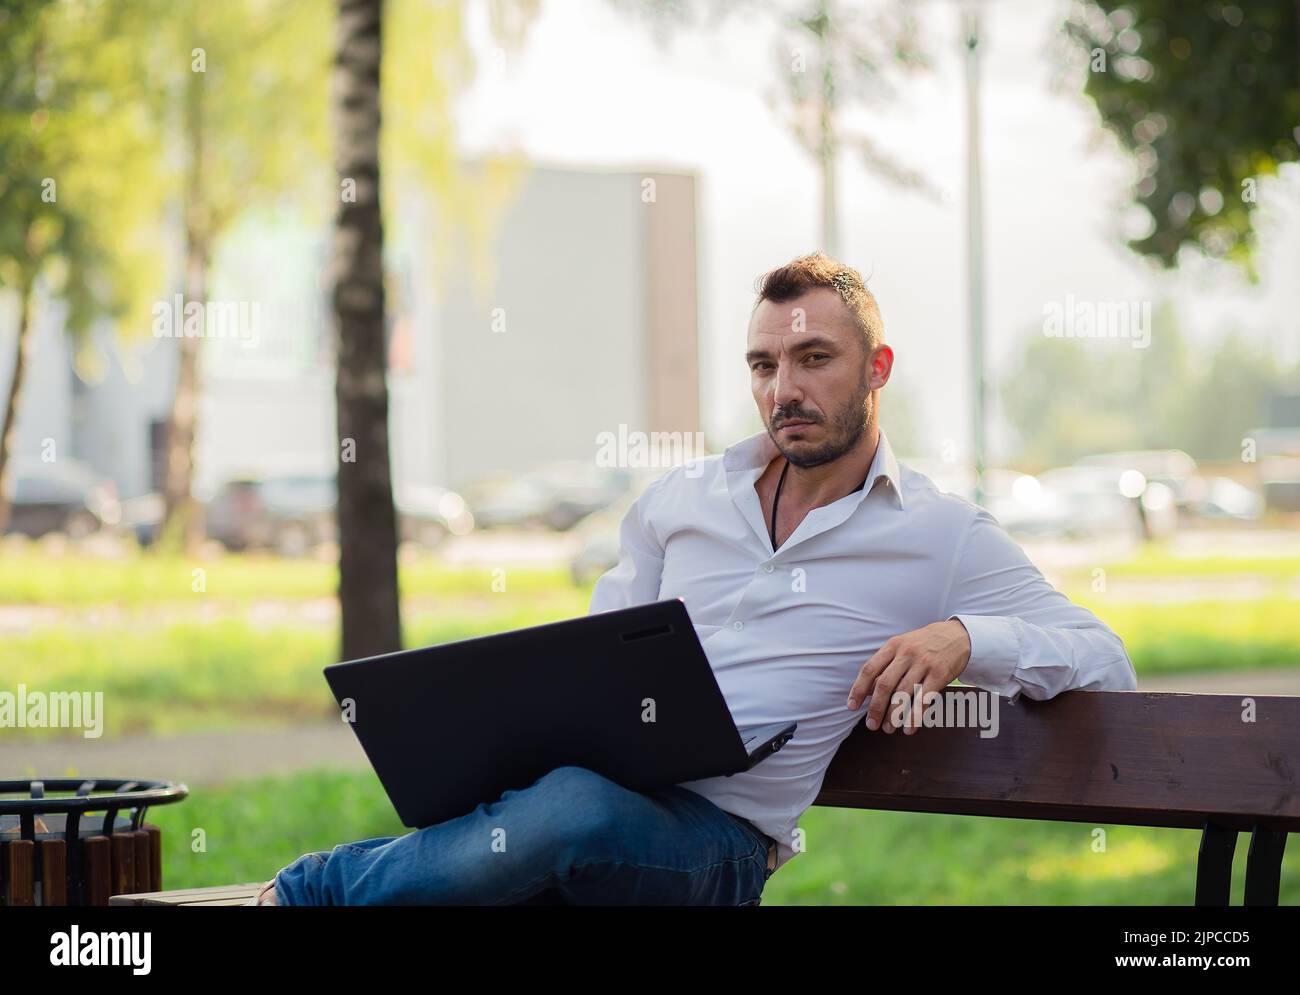 Un beau homme d'affaires dans une chemise blanche travaille dans le parc avec un ordinateur portable. Un jeune homme sur fond d'arbres verts, une chaude journée d'été ensoleillée. Lumière douce et chaude, gros plan. Banque D'Images